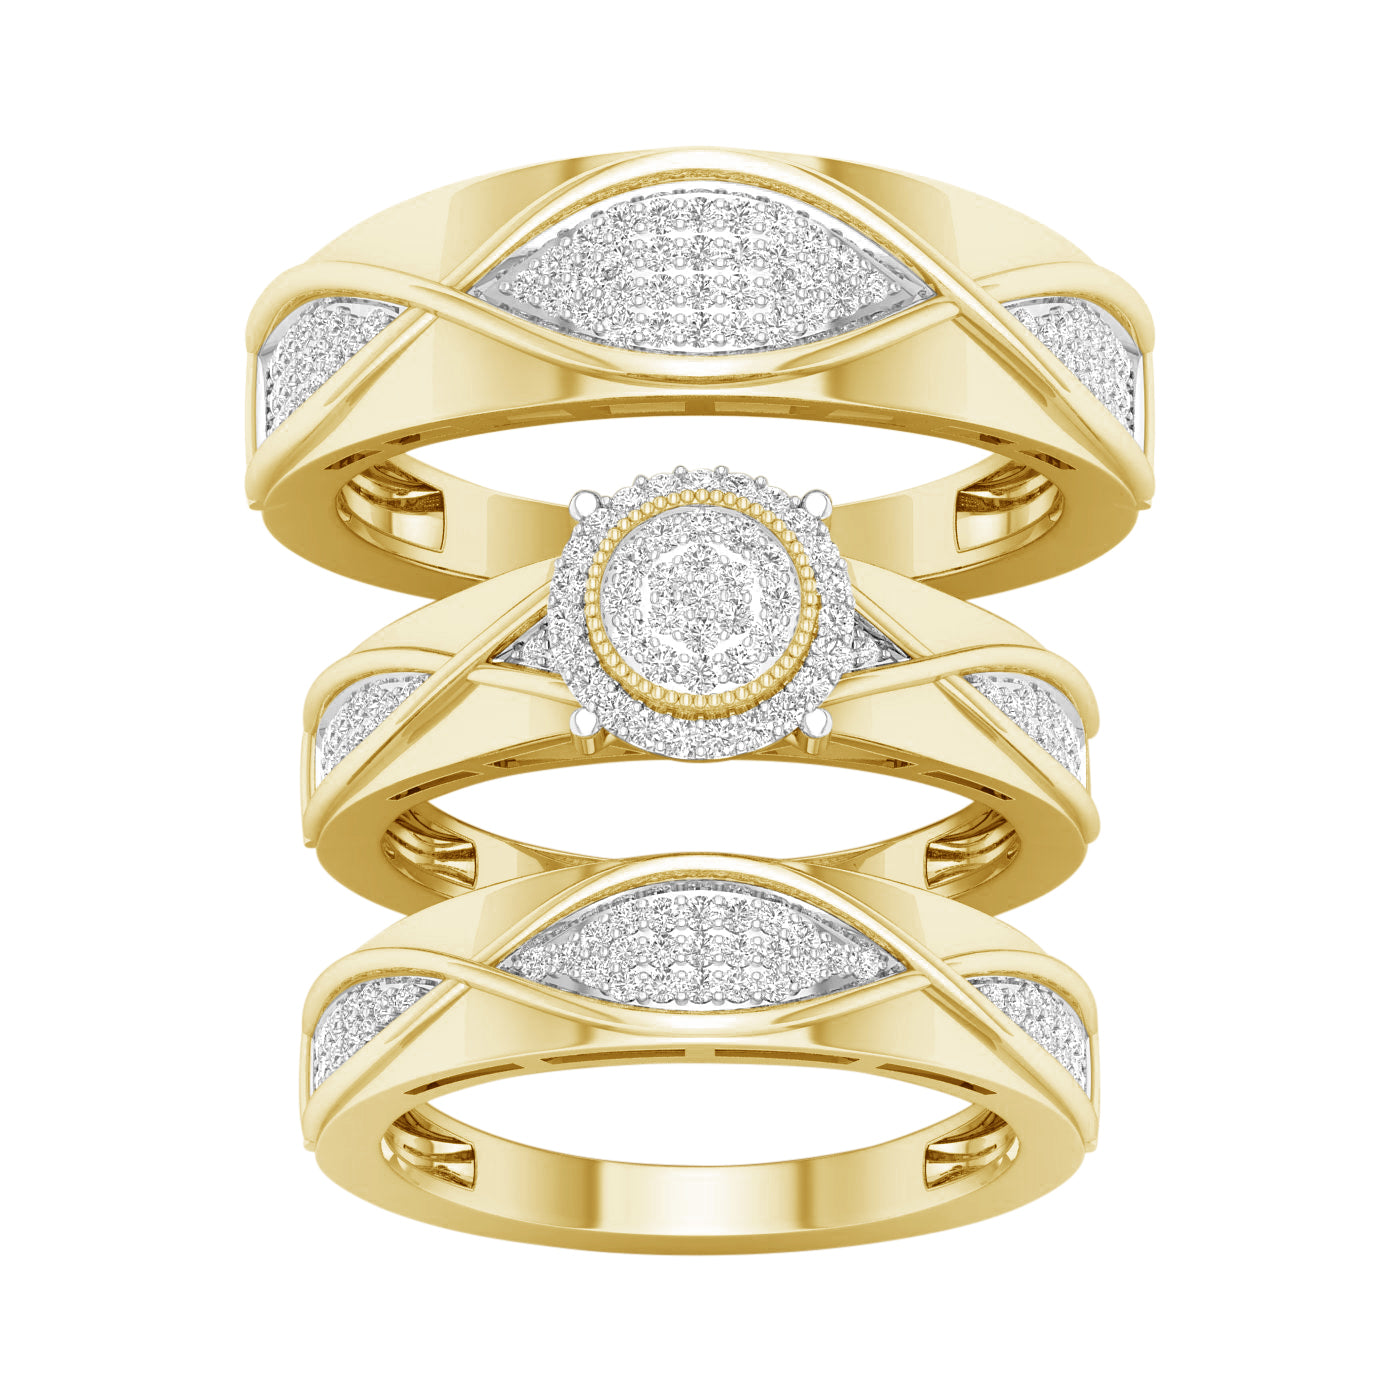 Juego de trío con halo circular de diamantes de 0,50 quilates en oro amarillo de 10 quilates